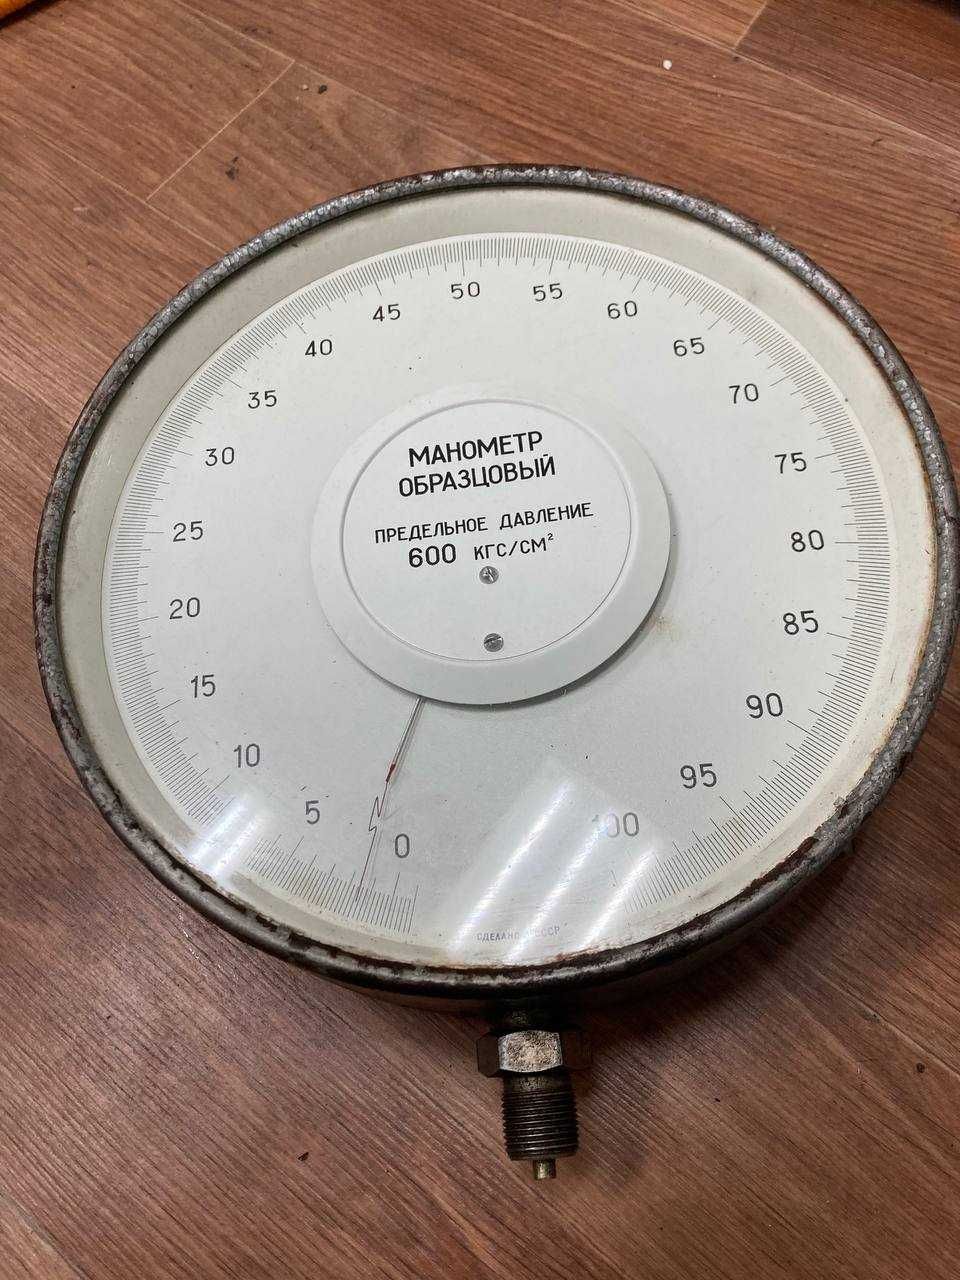 Монометр образцовый МО 1226 600 кгс/см2 1989 год